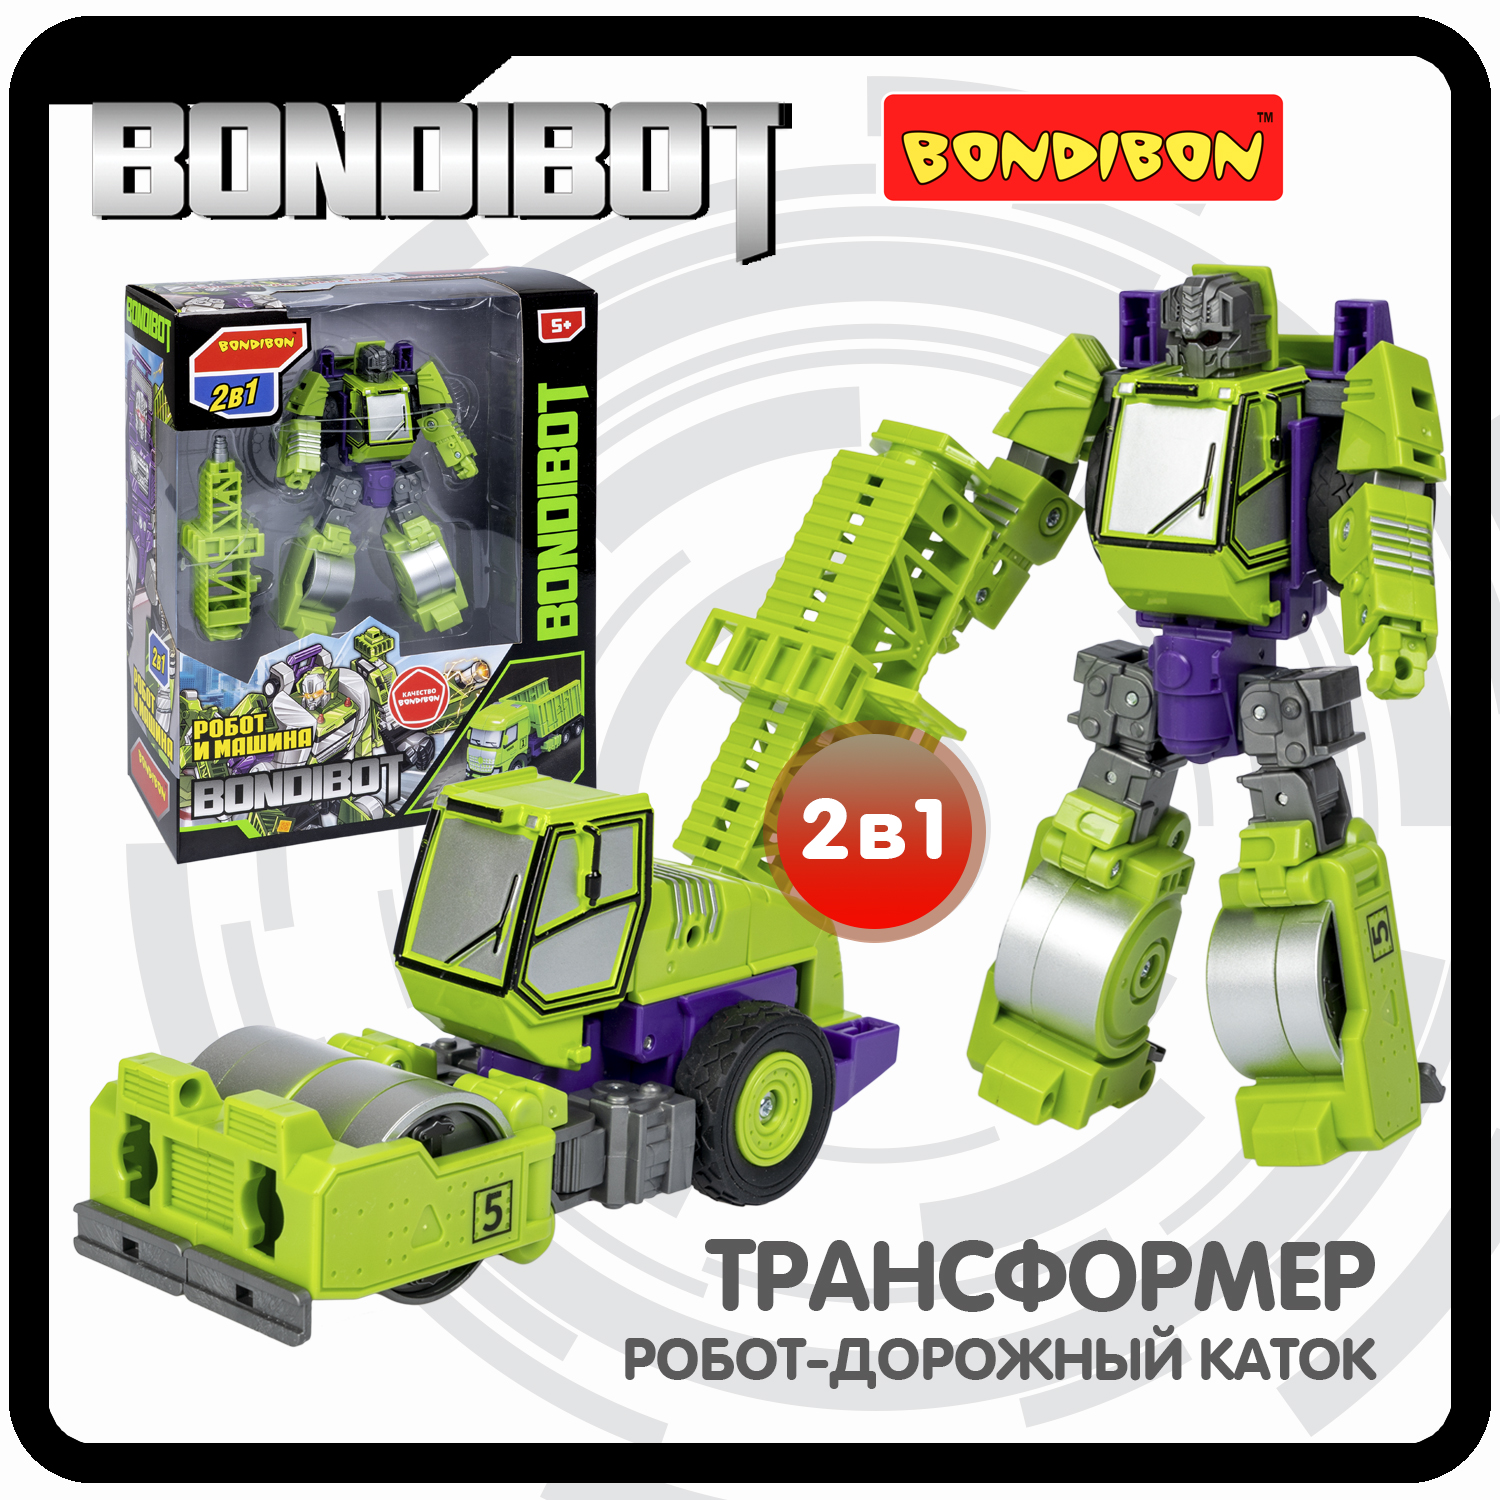 Трансформер 2в1 BONDIBOT Bondibon робот-строит. техника дорожный каток 28,5x23x9,5 см